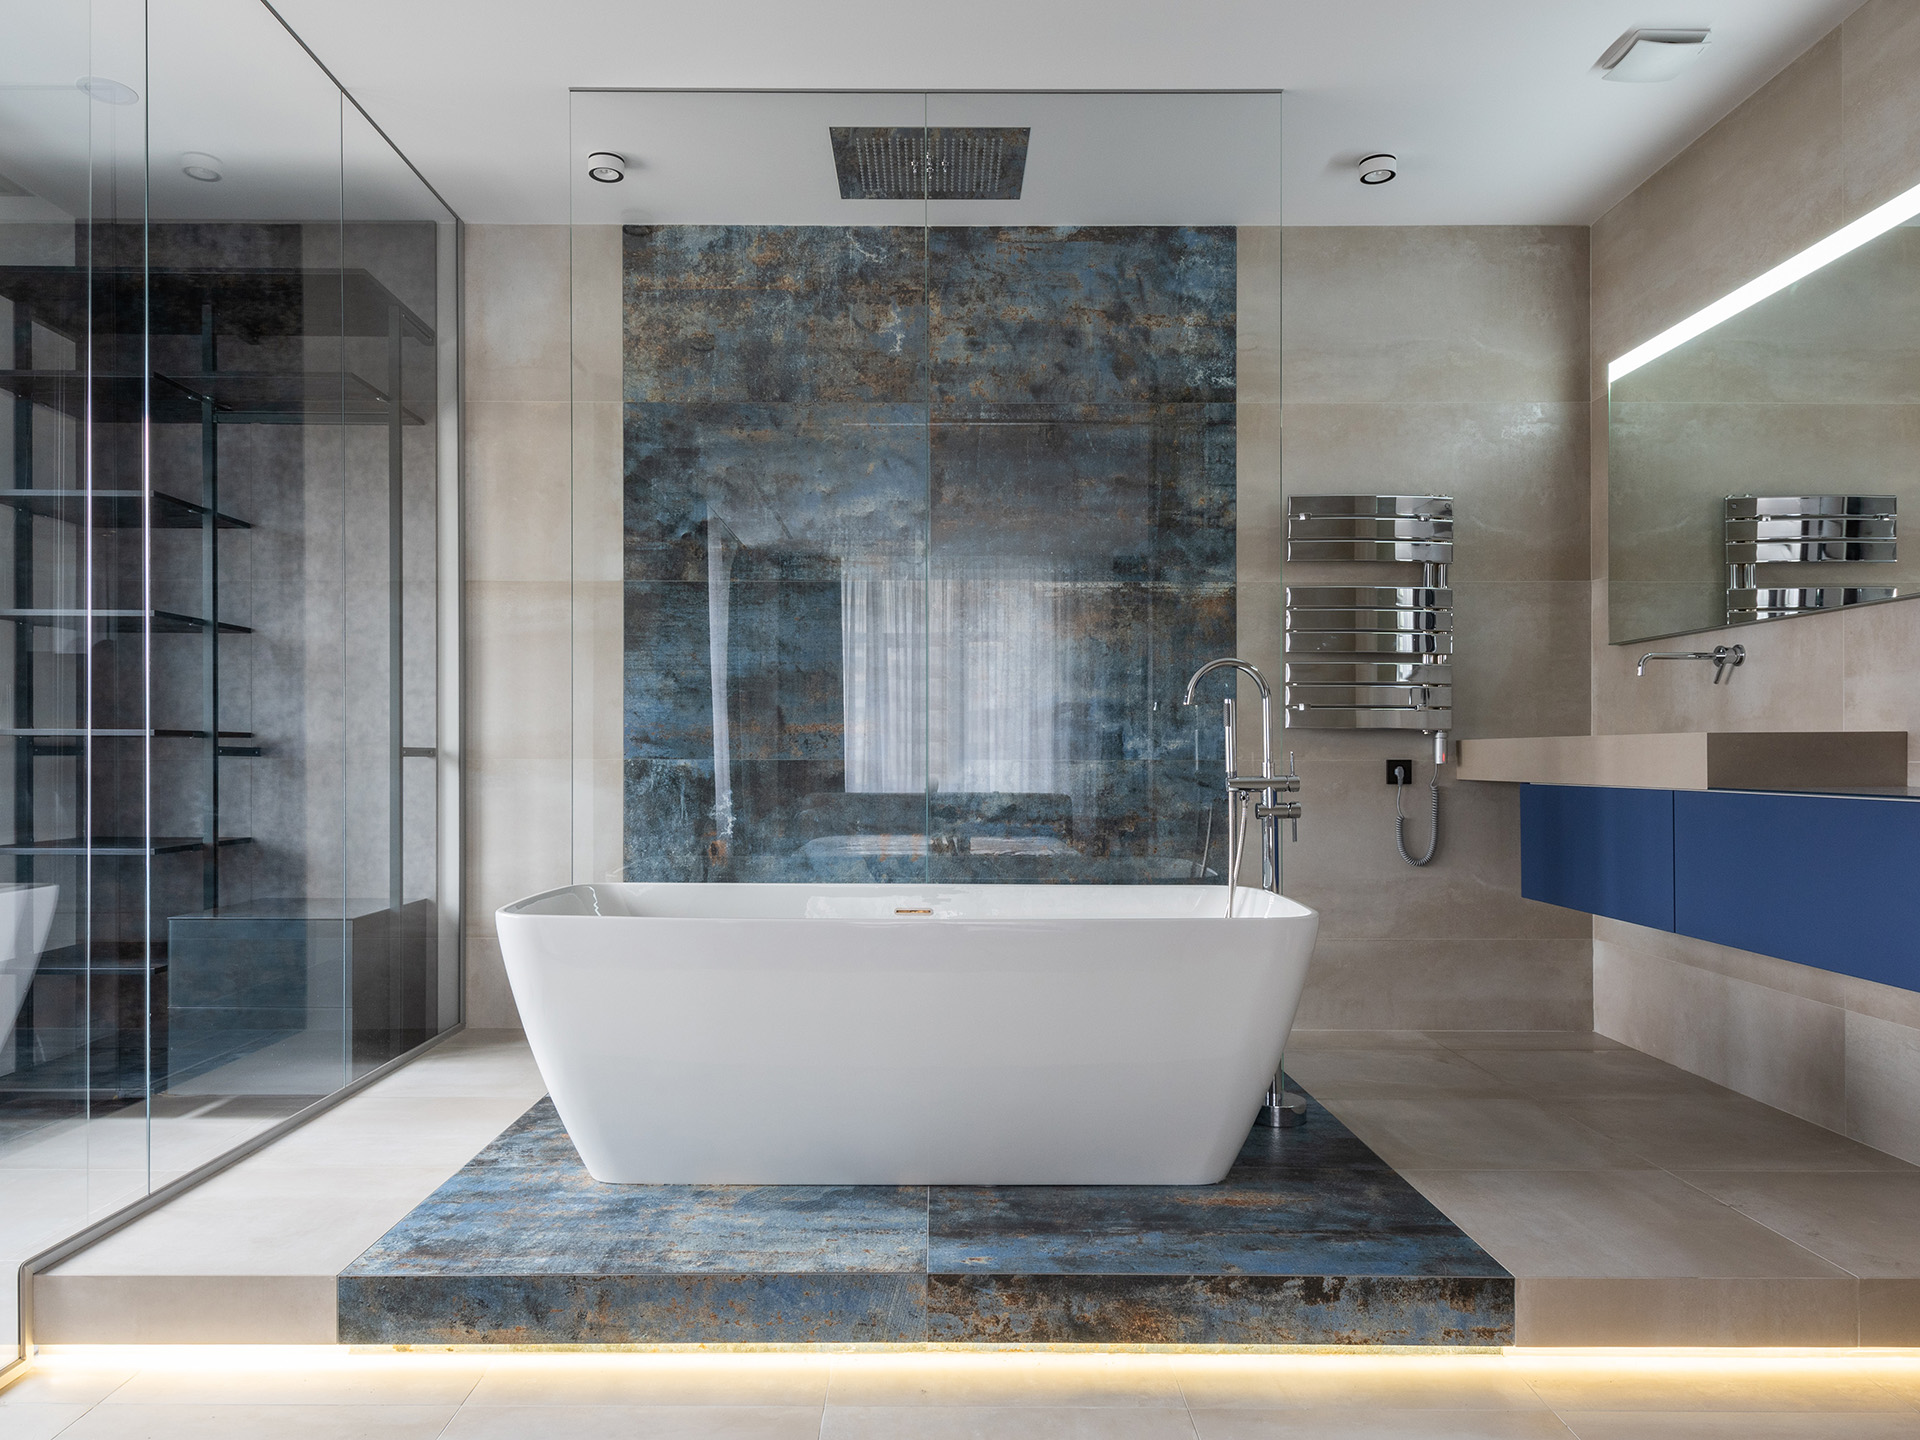 浴室的豪华空间:大理石作为设计爱好者的设计特点